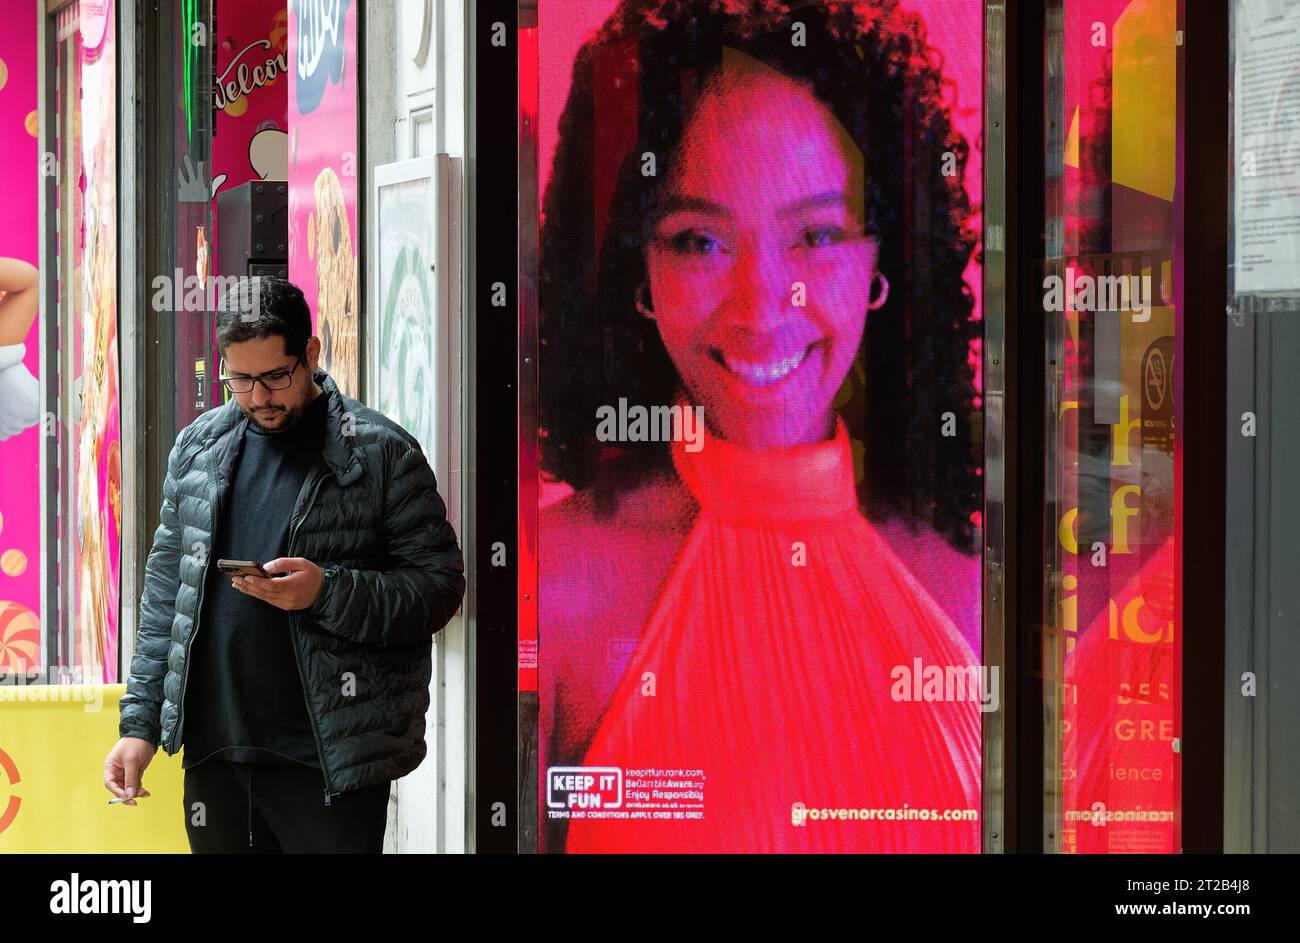 Un giovane che usa un telefono cellulare ignaro di un cartellone elettronico di una donna attraente sorridente, Central London England UK Foto Stock